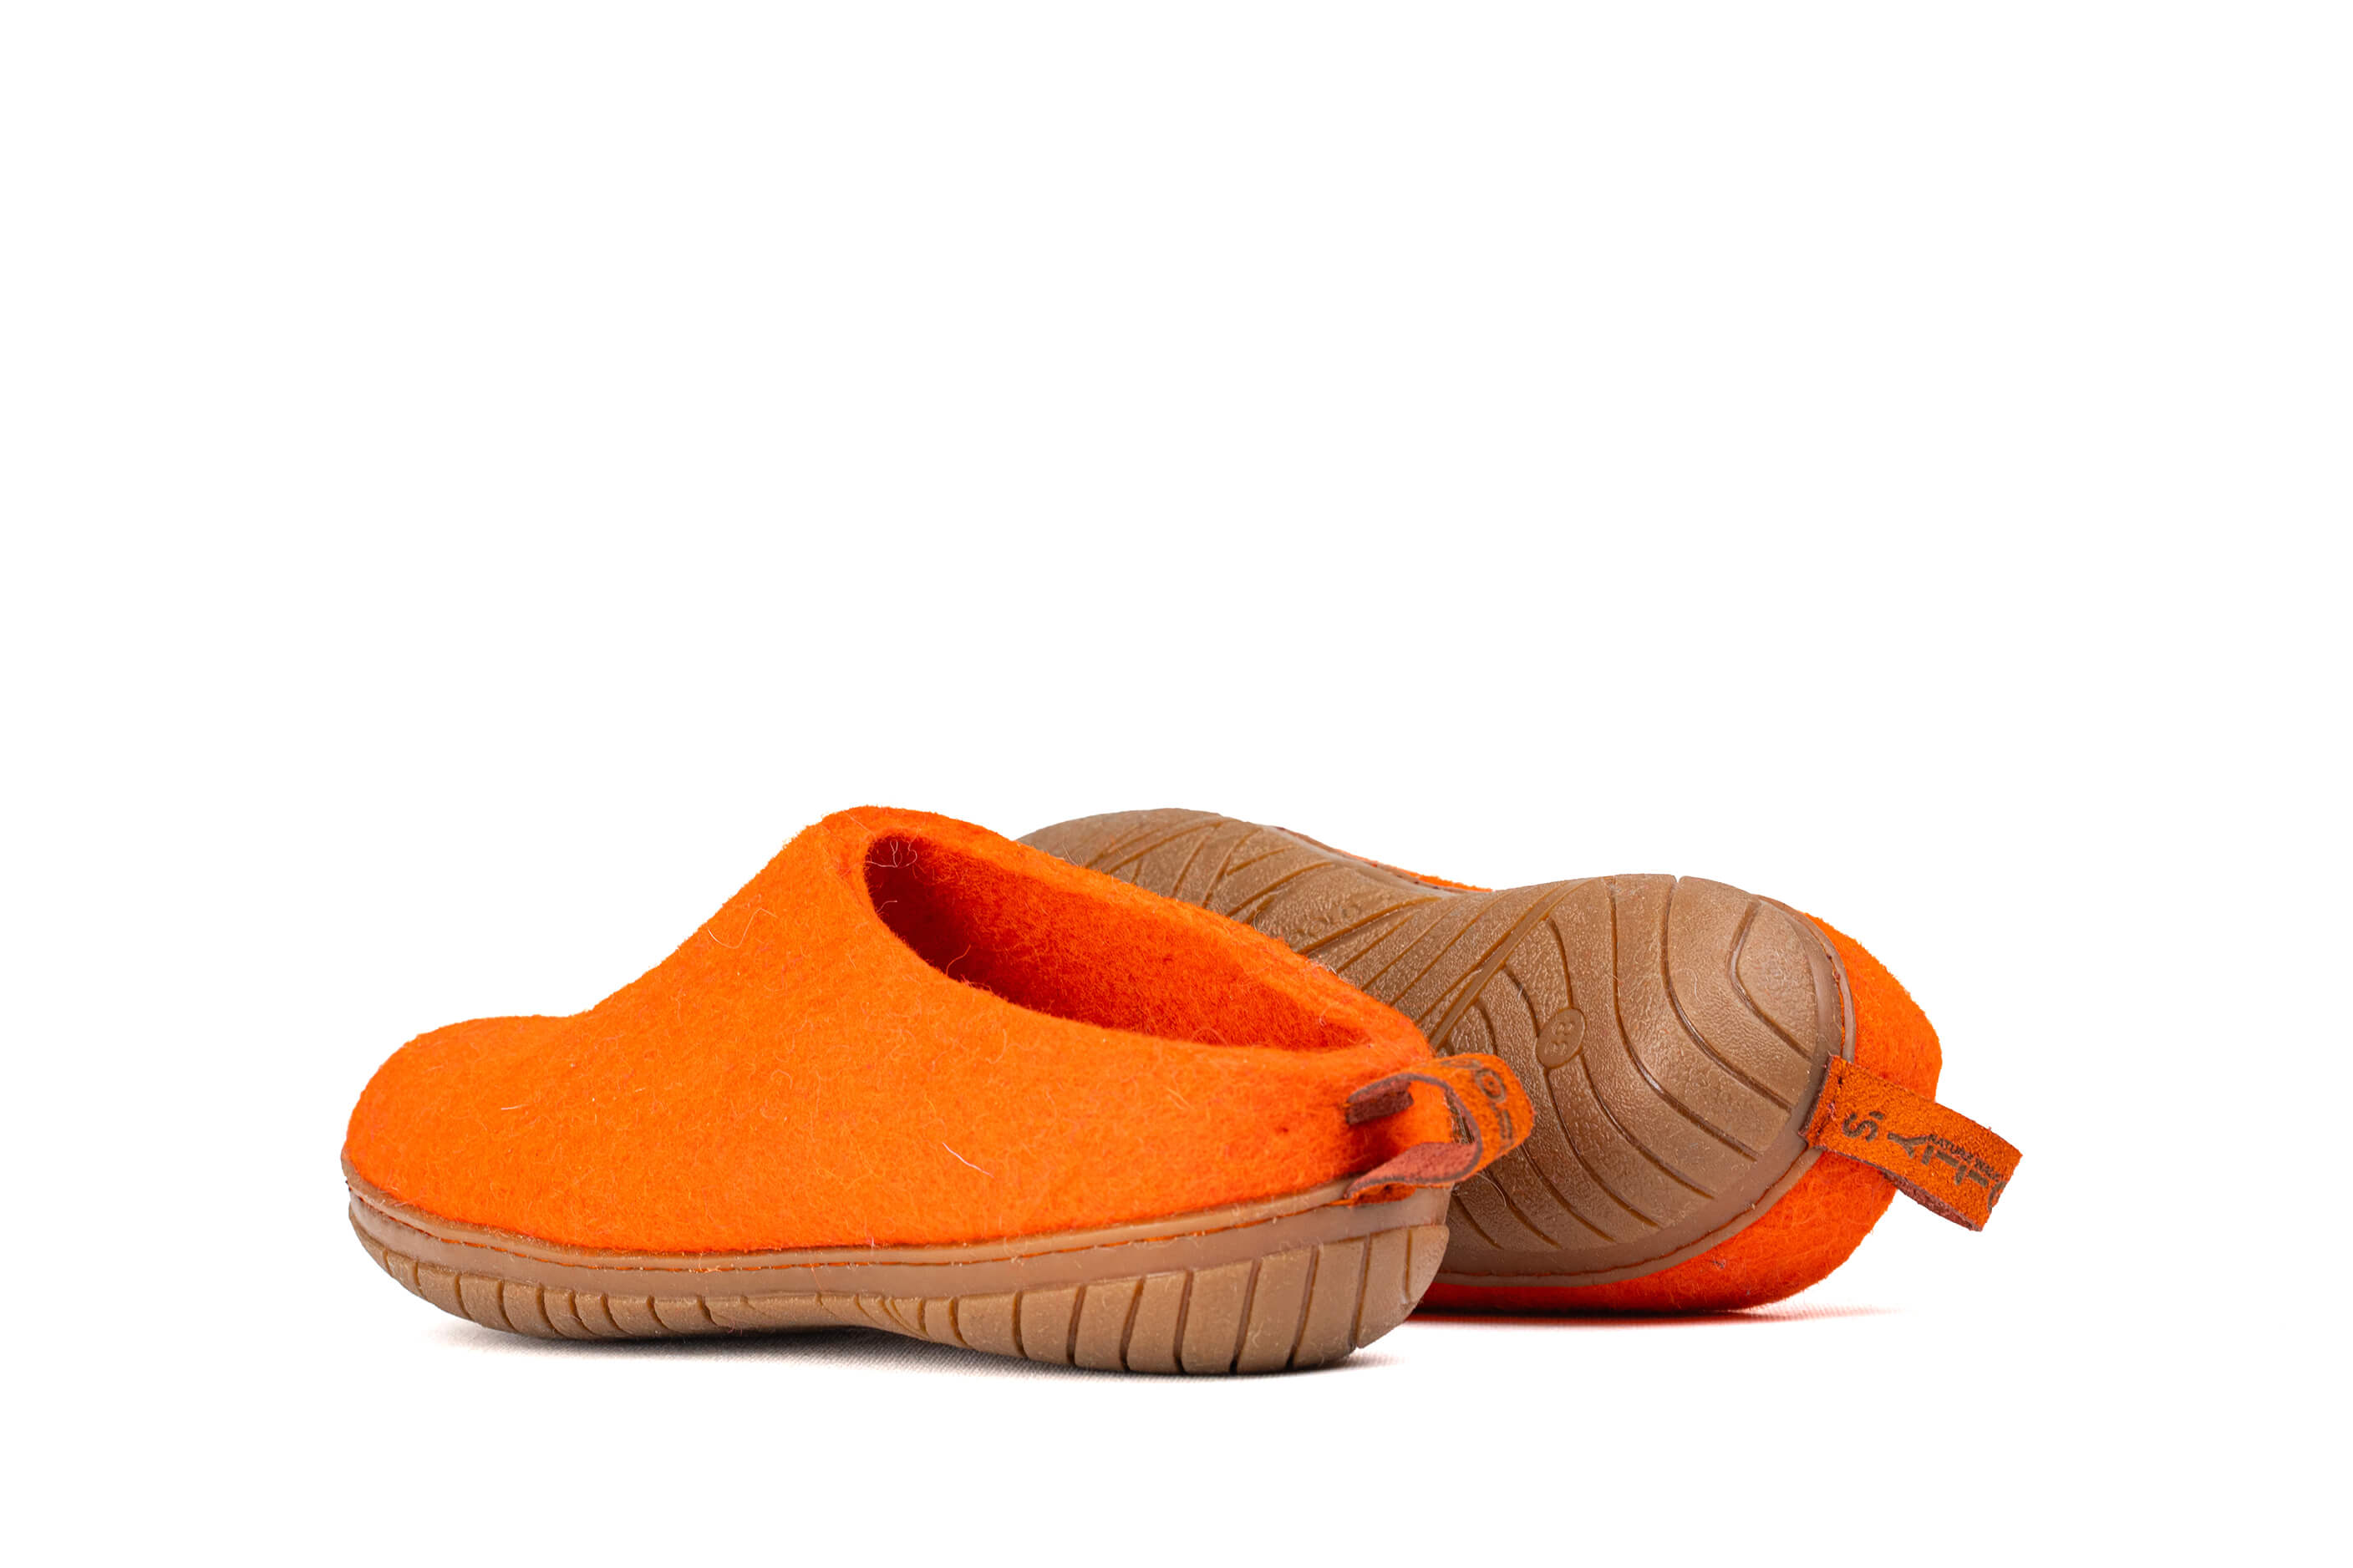 Outdoor Open Heel Slippers With Rubber Sole - Orange